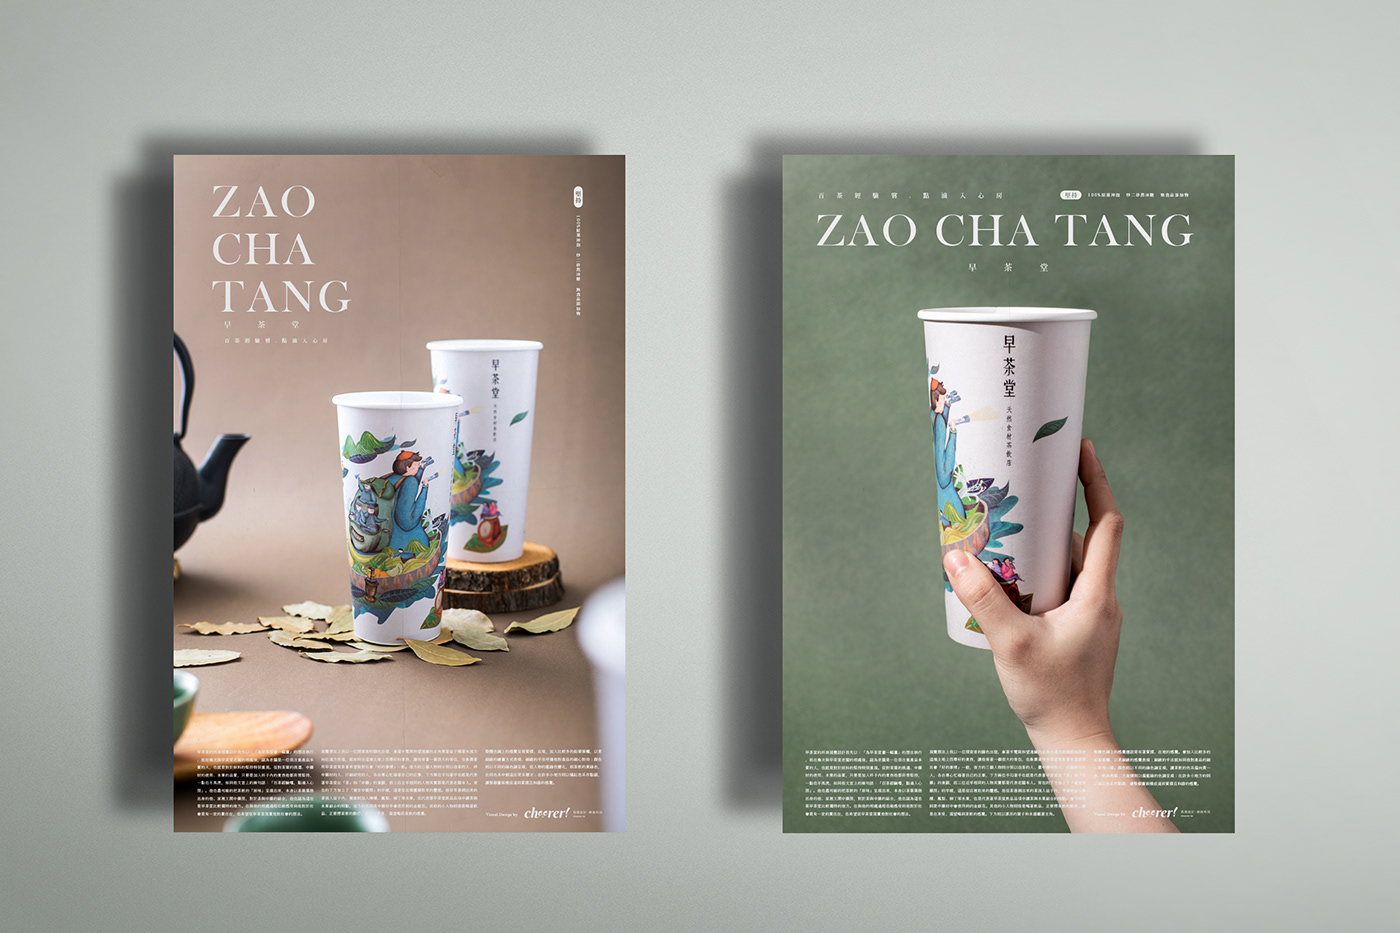 插畫 飲料 飲料杯 茶飲 茶葉 包裝設計 beverage taiwan tea CHEERER